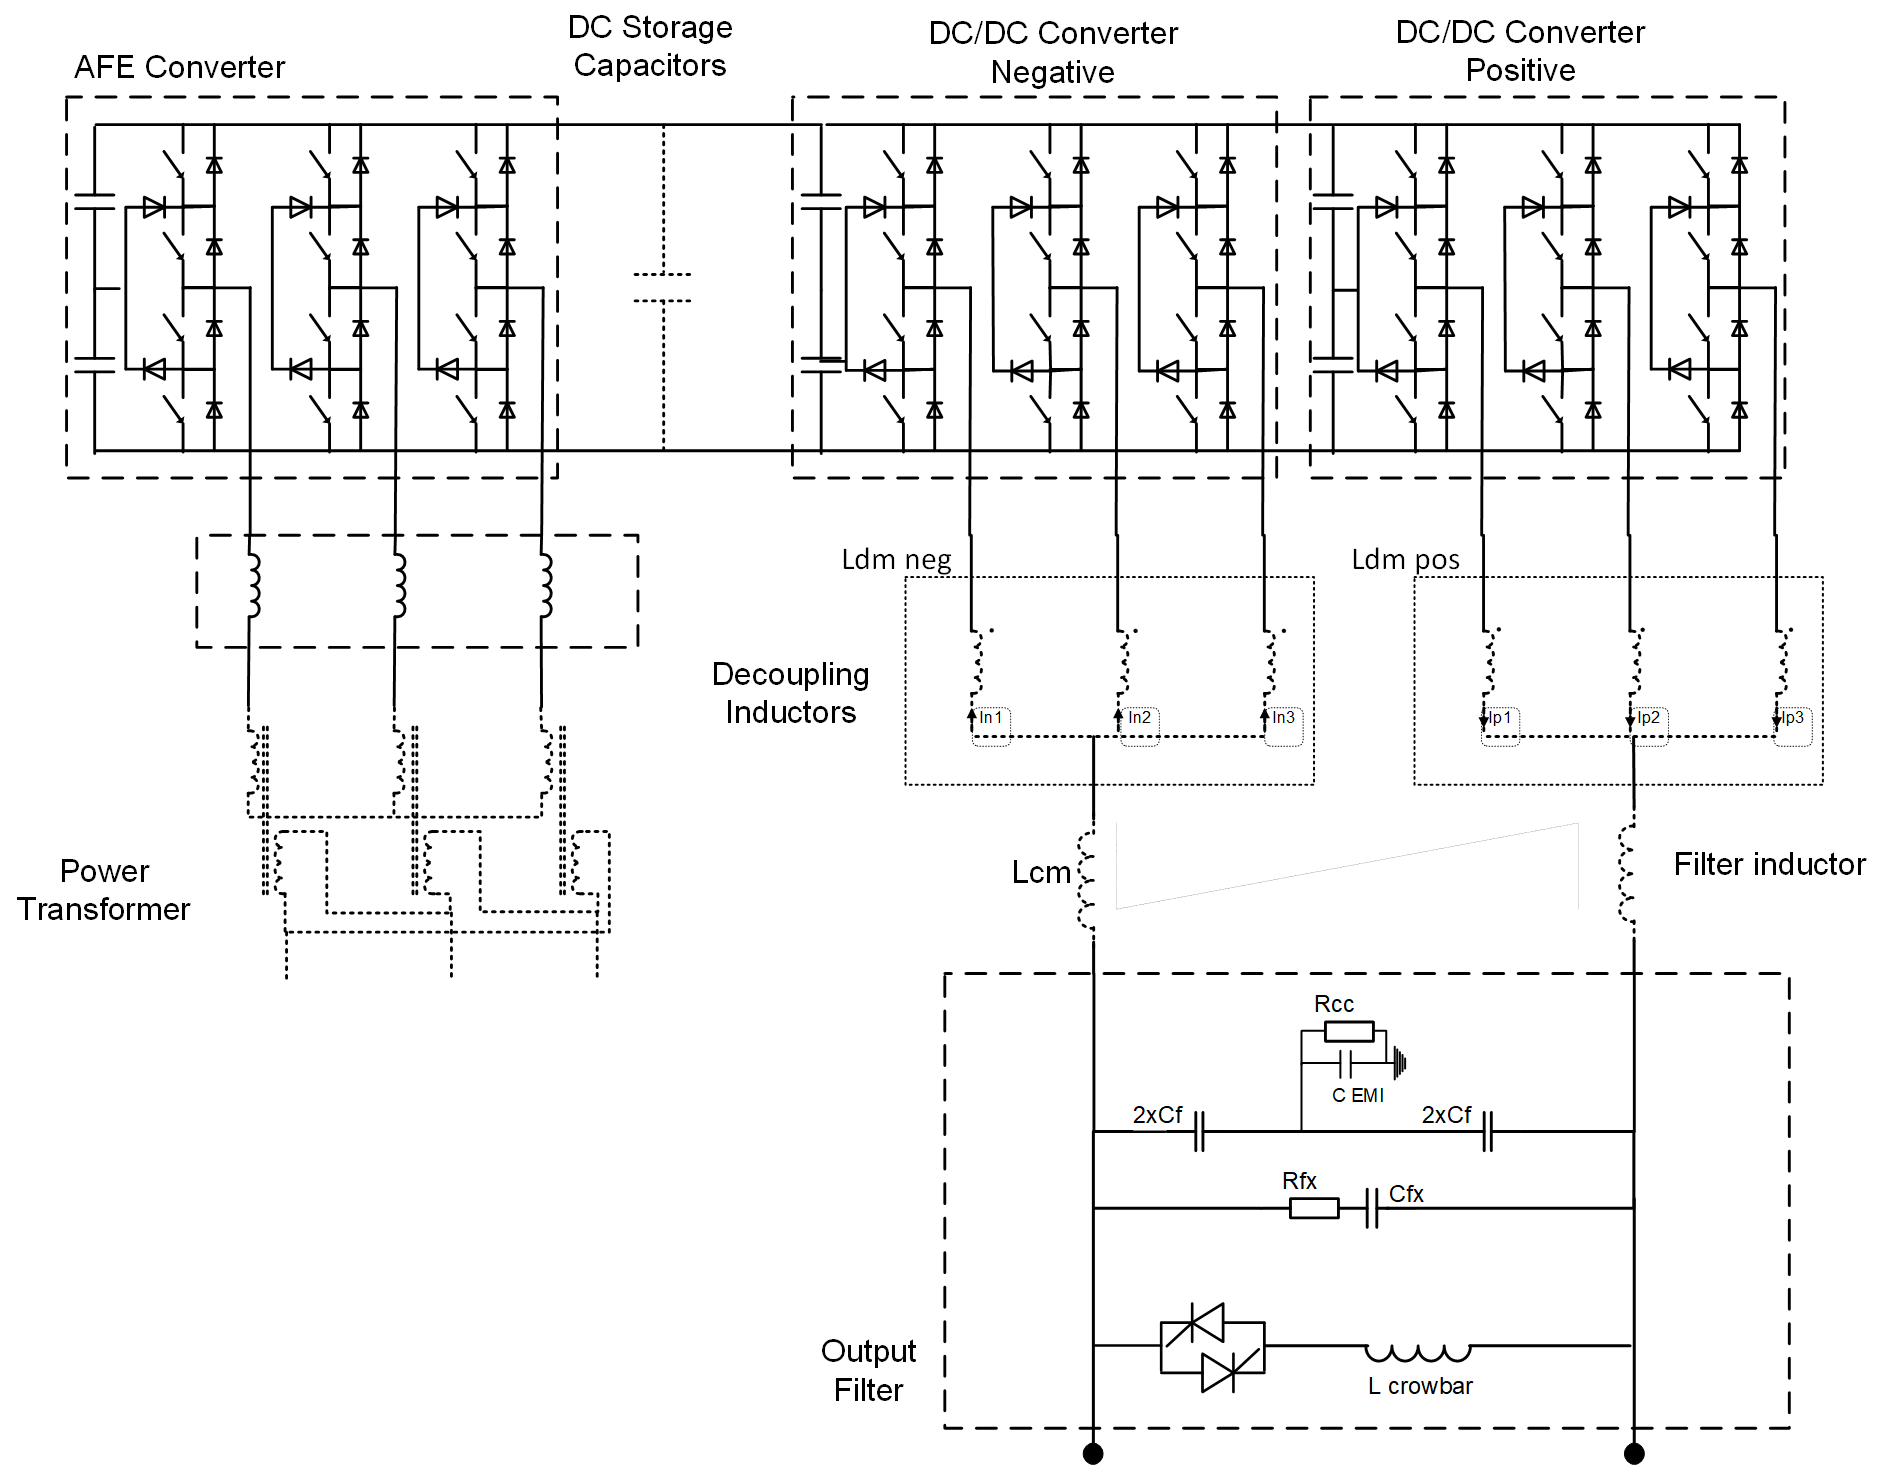 POPSB power converter schematic diagram